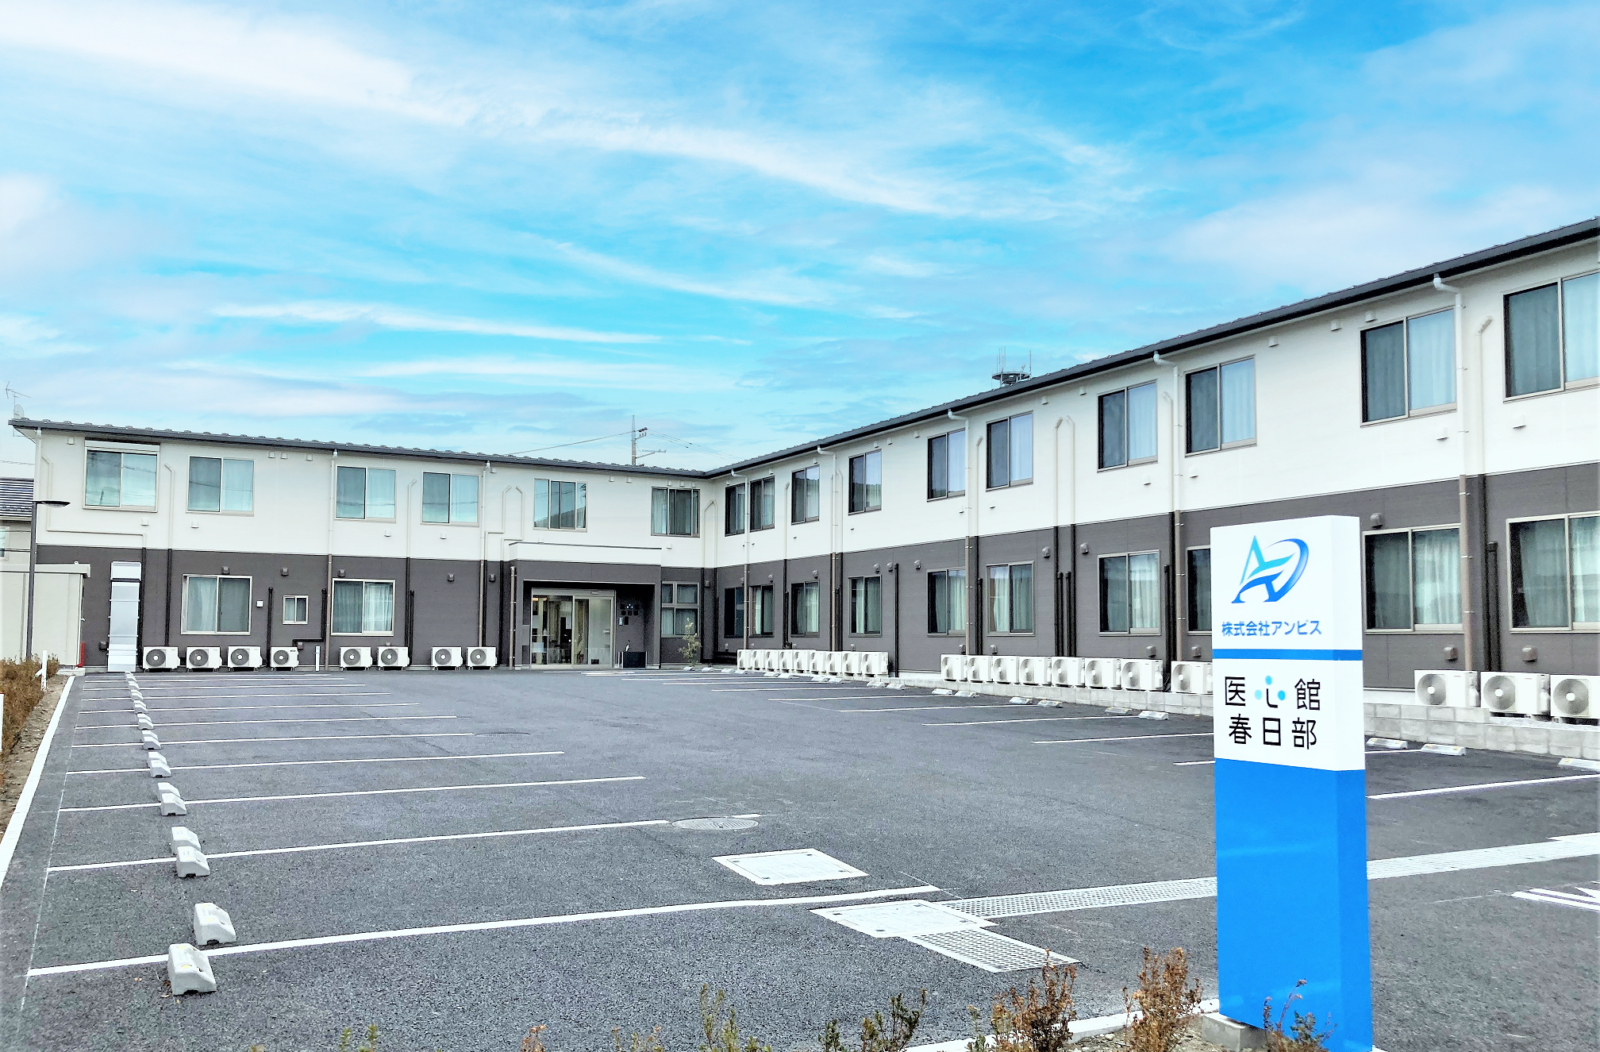 埼玉県では９施設目となる有料老人ホーム「医心館 春日部」をオープンしました